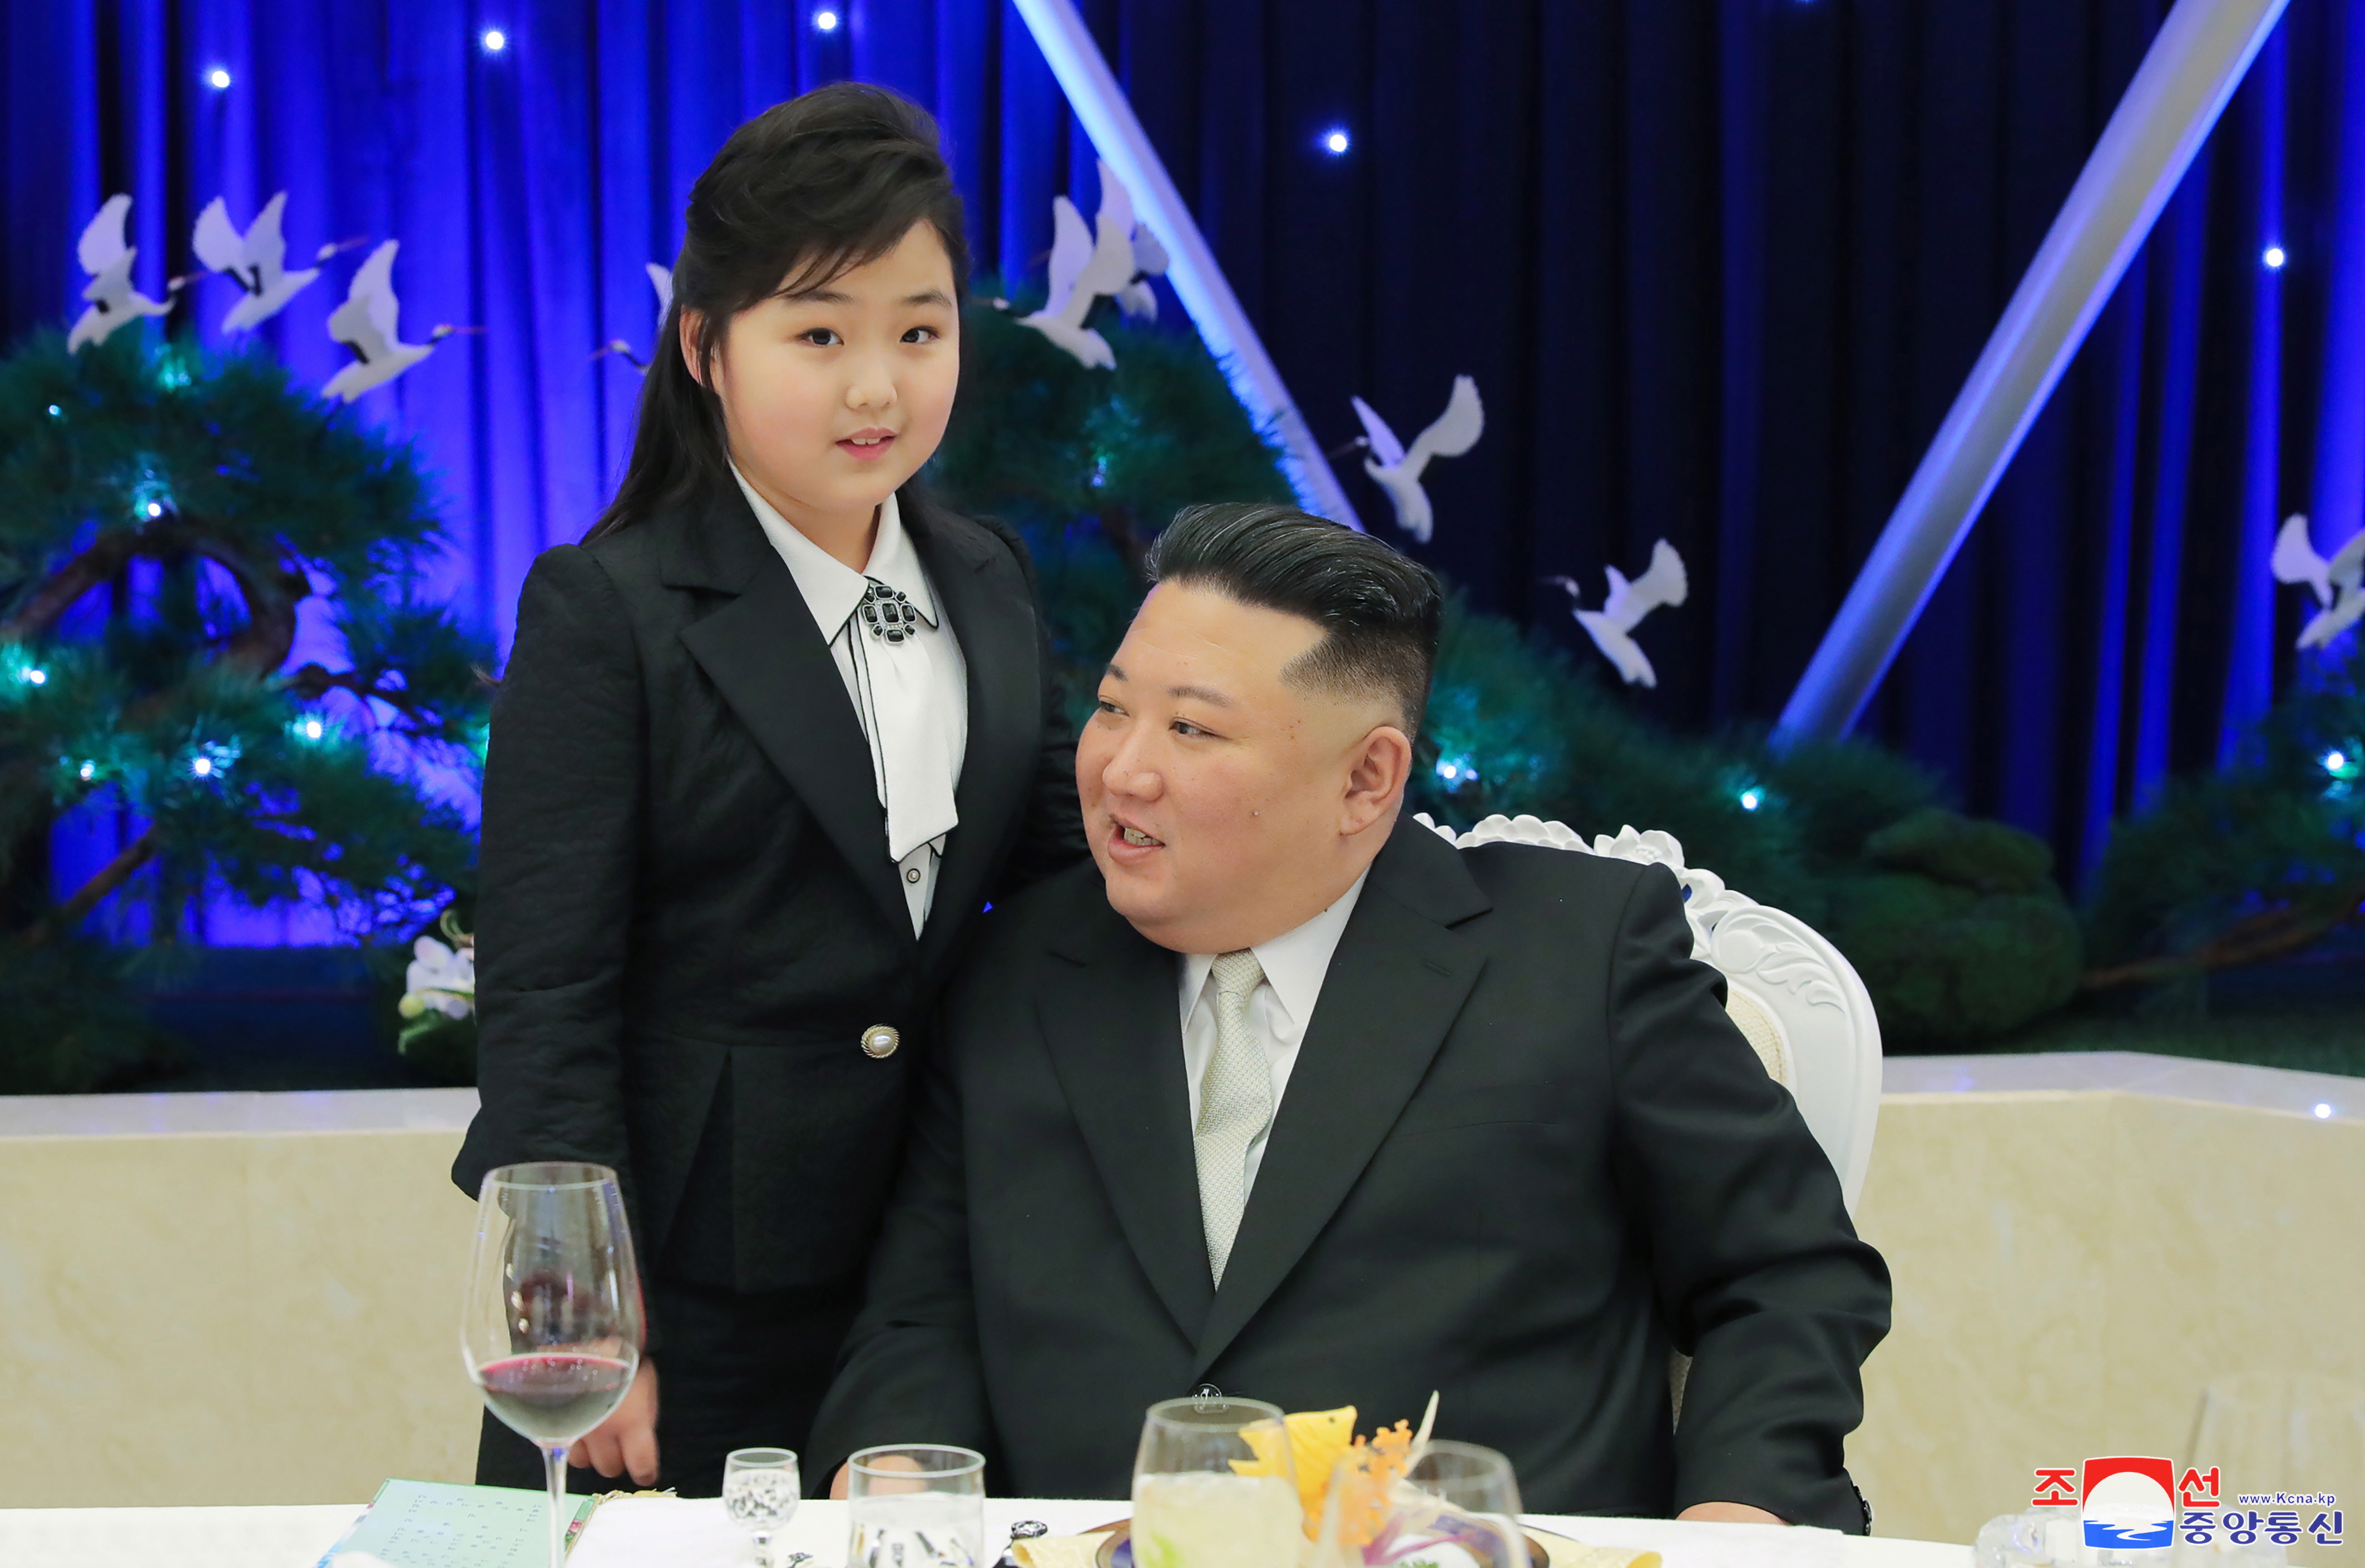 Cu cine a apărut Kim Jong Un la ultimul eveniment din Coreea de Nord. Semn puternic privind succesorul său la putere - Imaginea 1